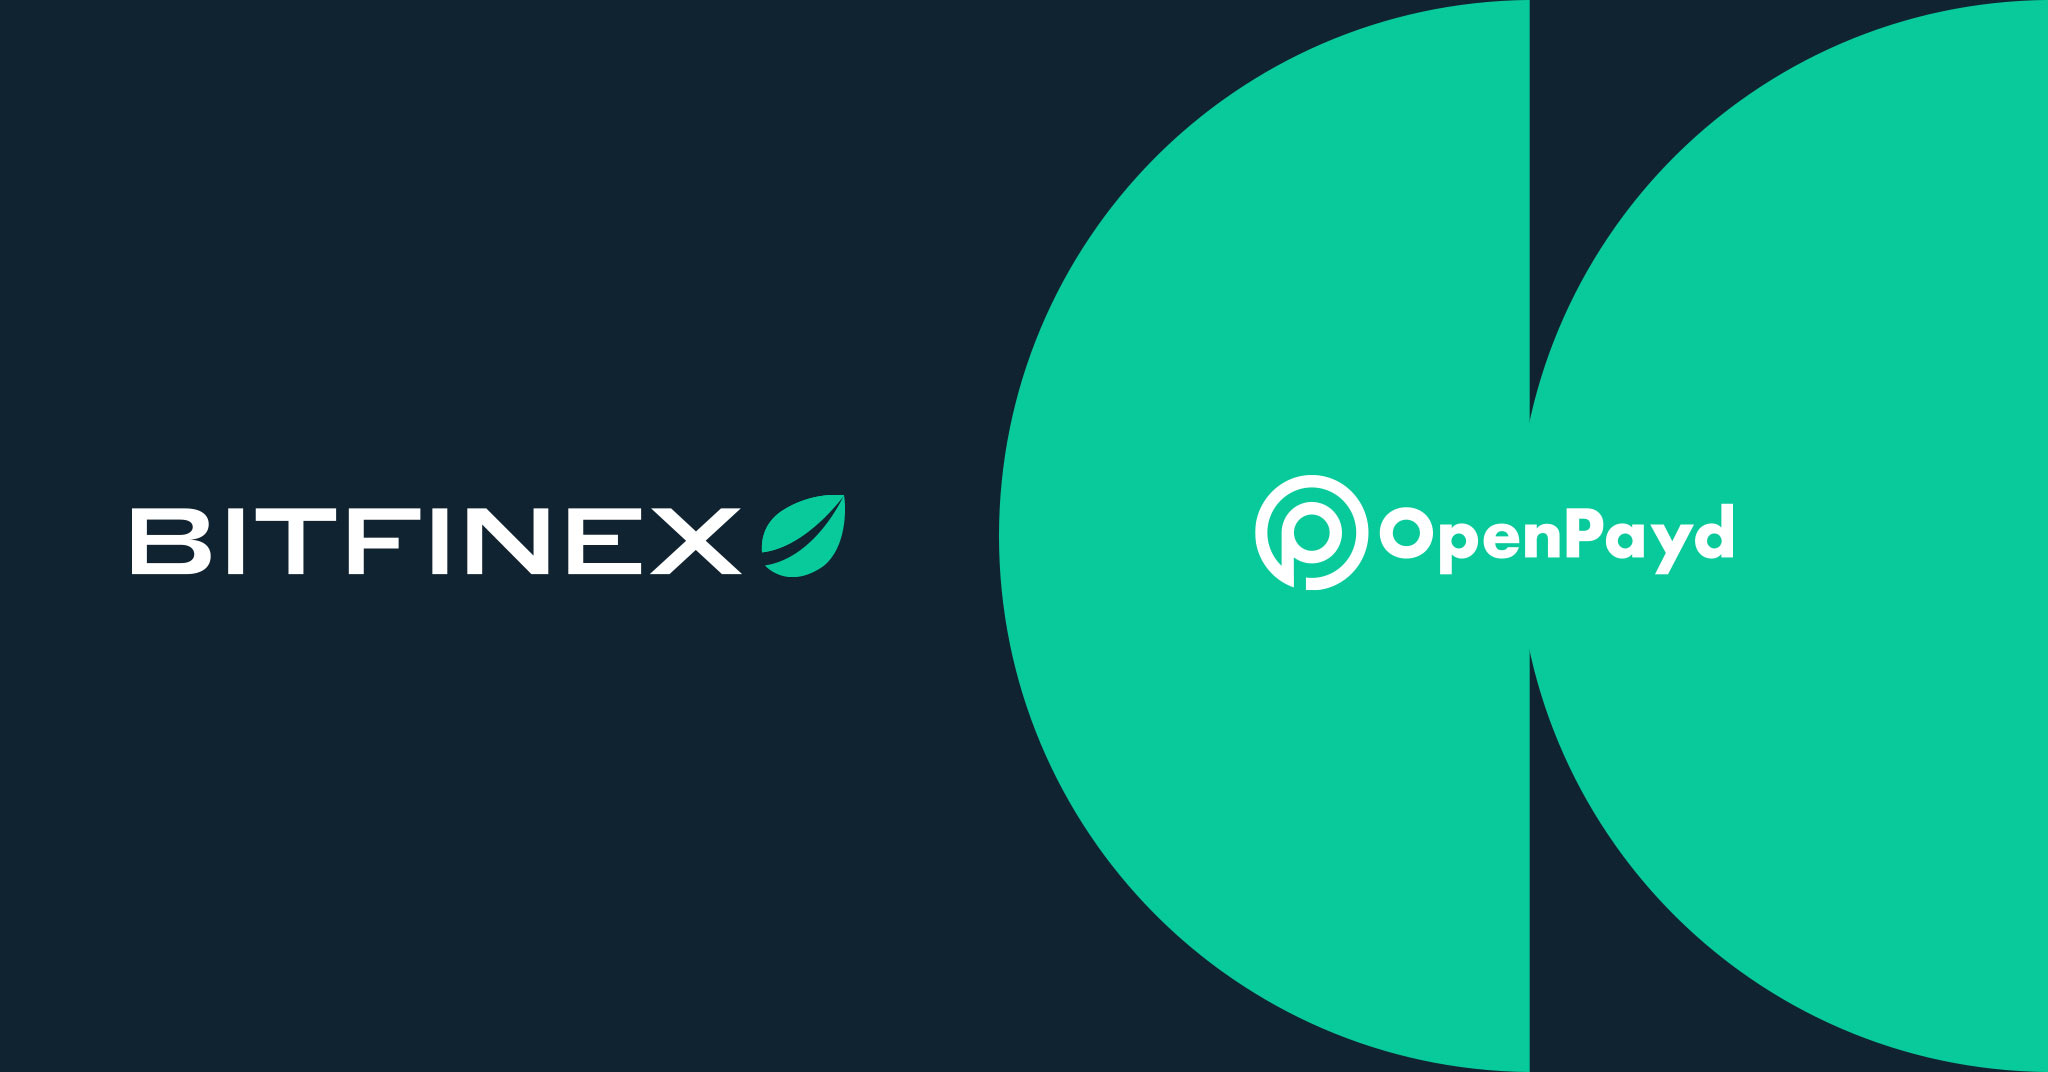 Bitfinex Case Study by OpenPayd